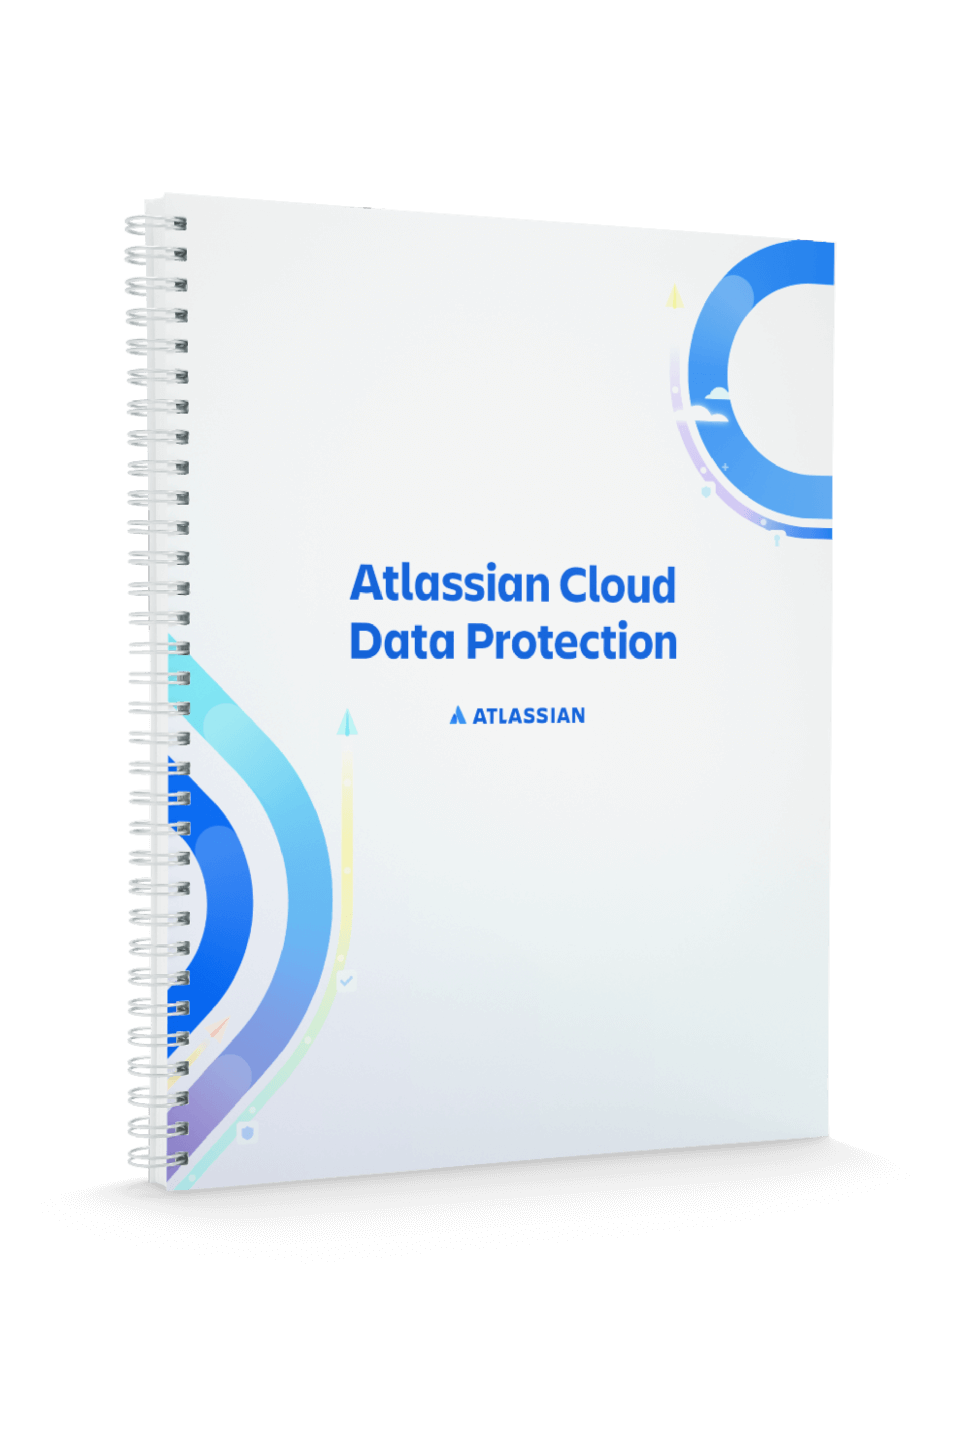 Deckblatt "Datenschutz in Atlassian Cloud"